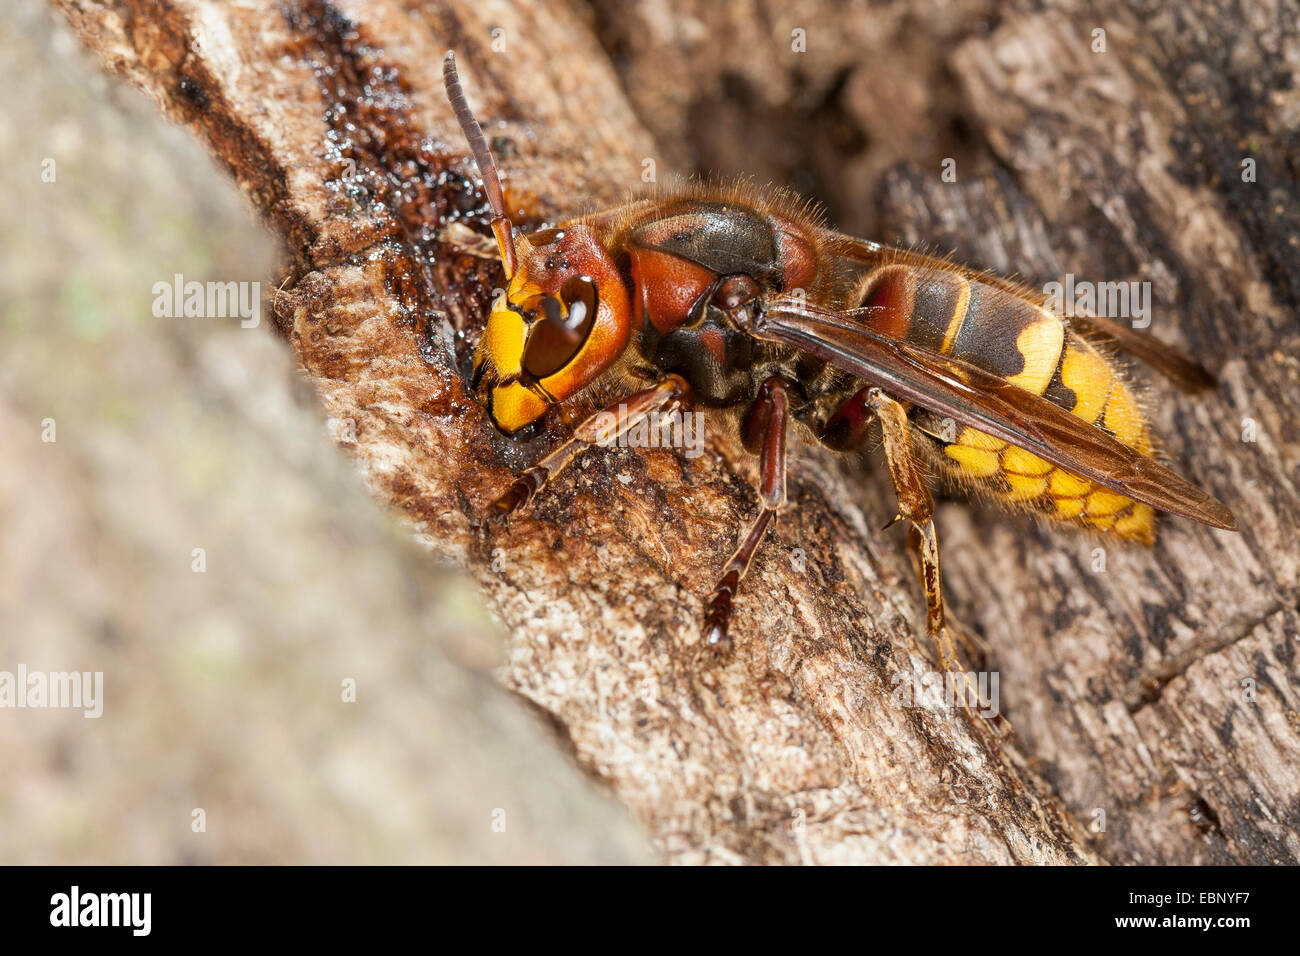 Hornet, brown, hornet hornet Européen (Vespa crabro), léchant le jus d'arbre à un tronc de chêne blessé, Allemagne Banque D'Images